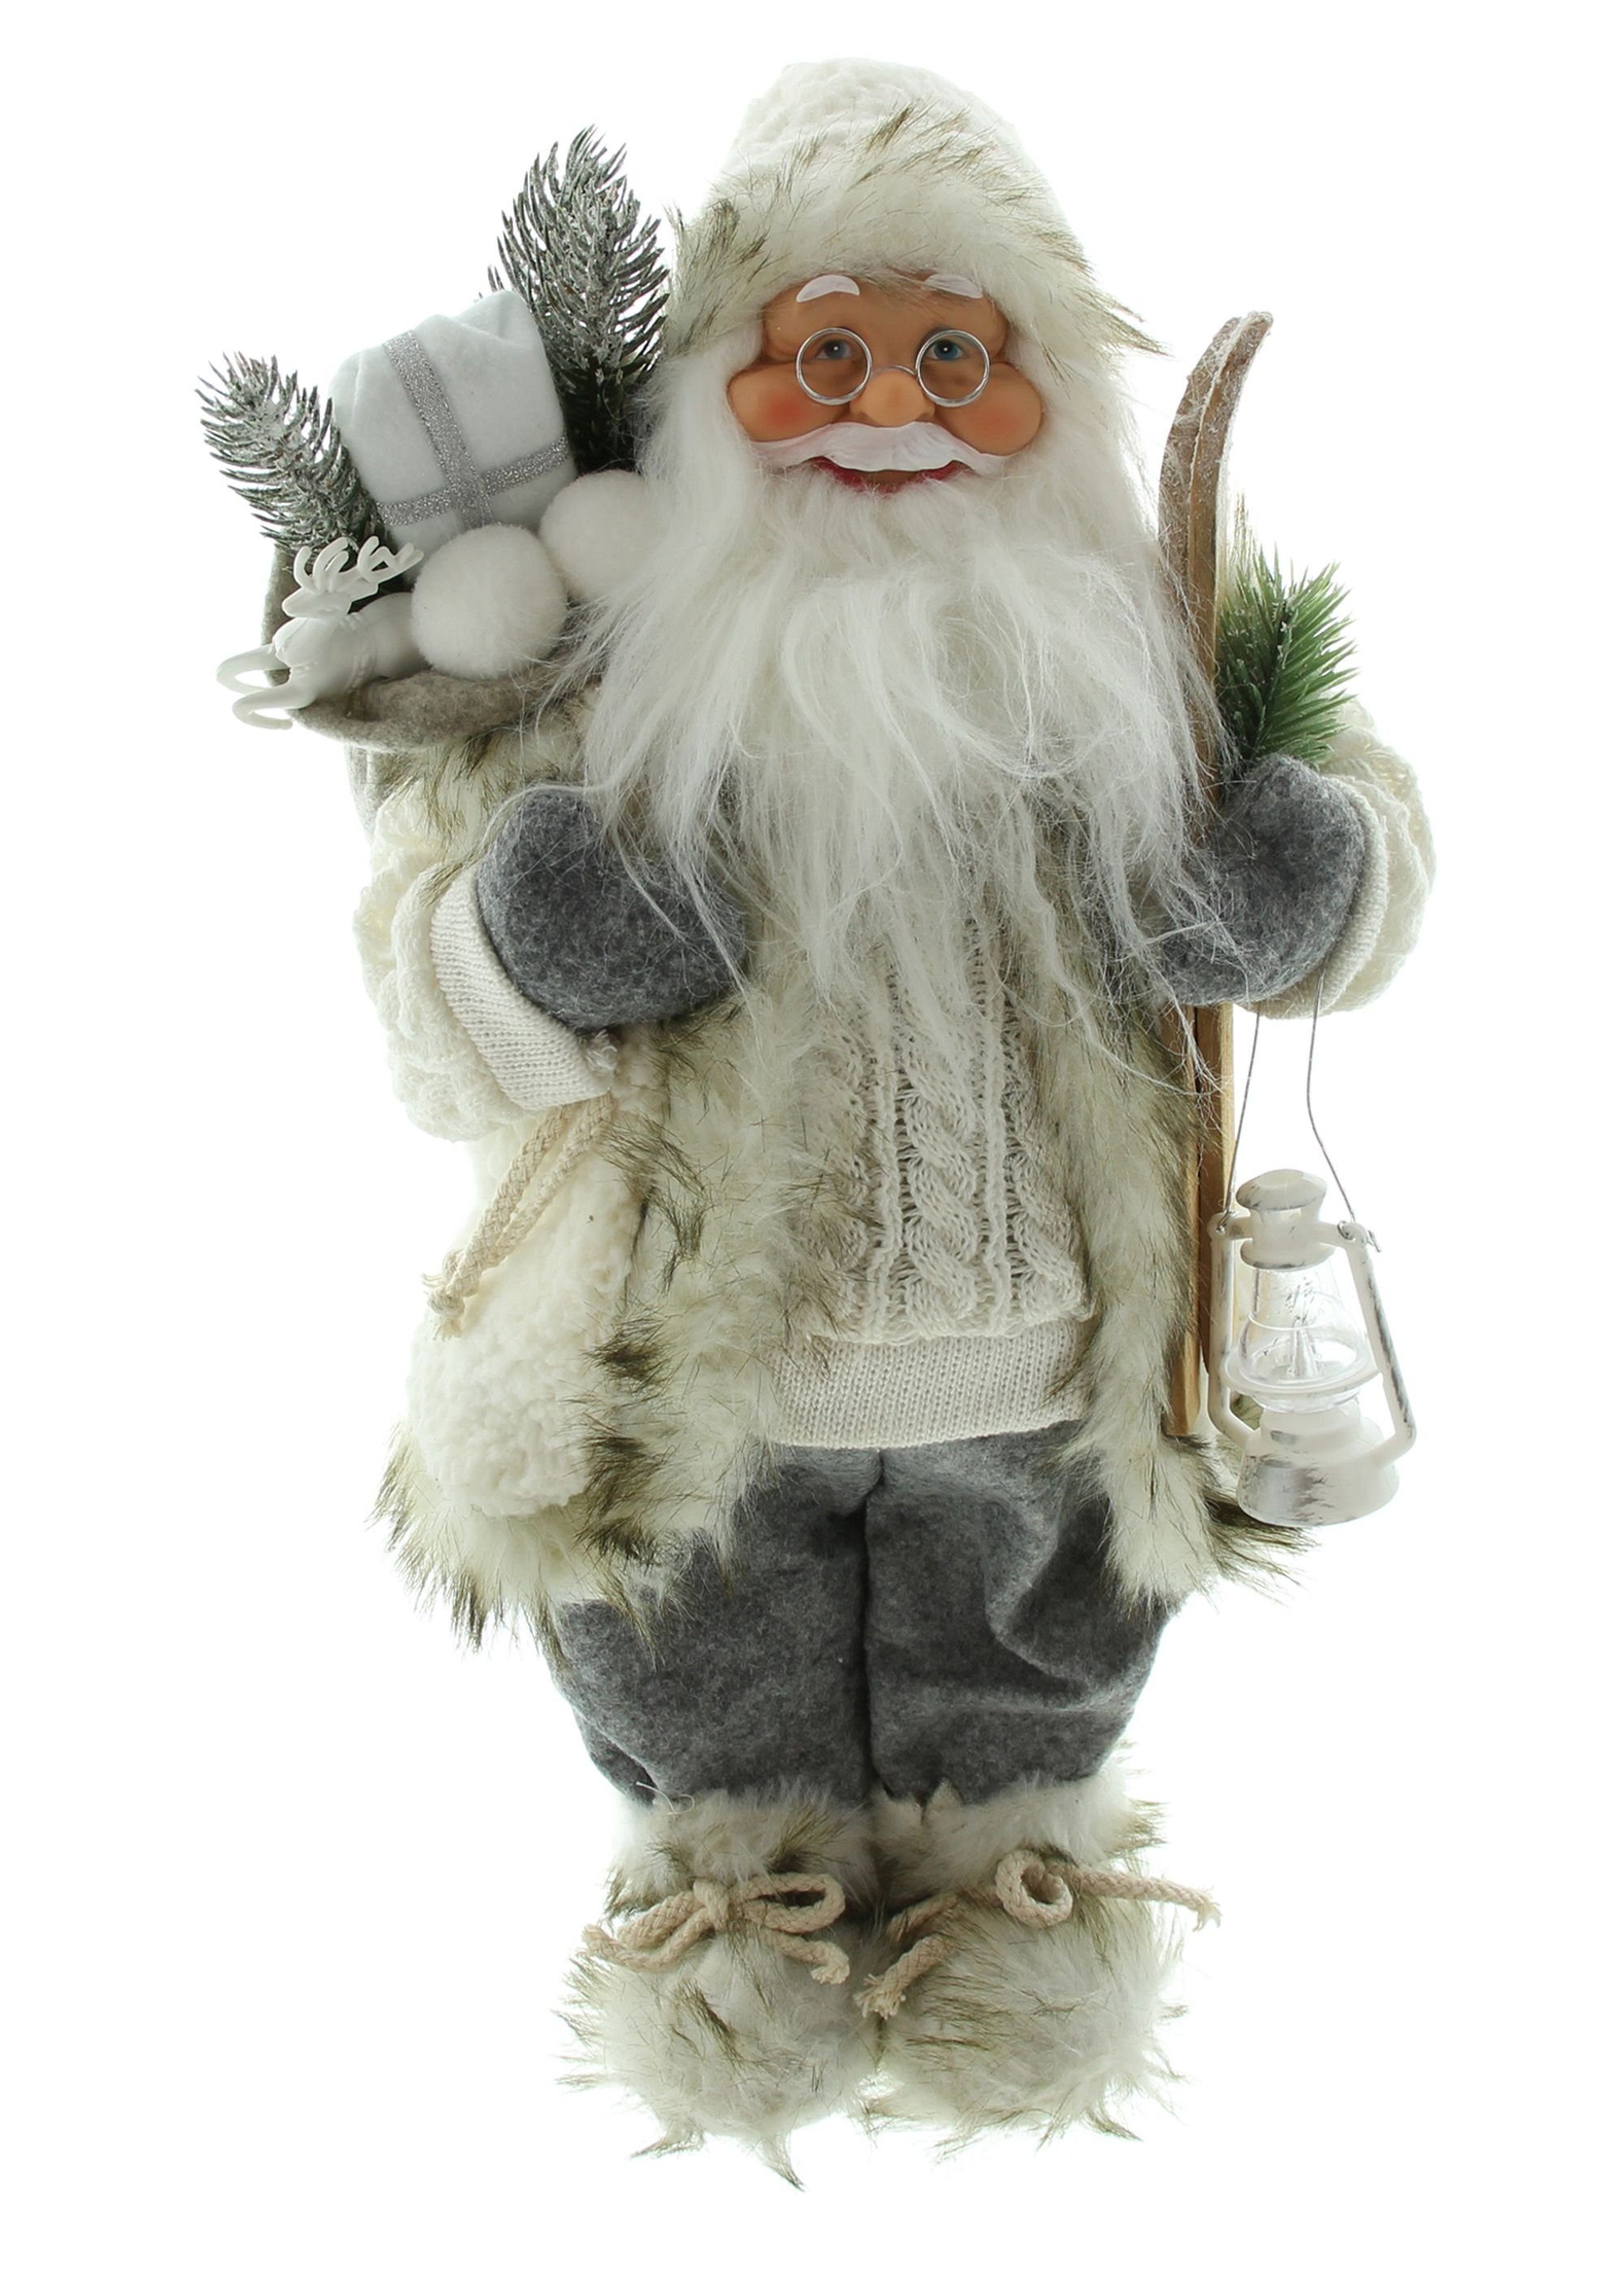 cm St), hoch, Ski 46 (1 Weihnachtsdeko Nikolaus Christkind, & Weihnachtsmannfigur, Deko Claus Dekoleidenschaft mit Laterne Weihnachtsmann "Winter" Santa Figur